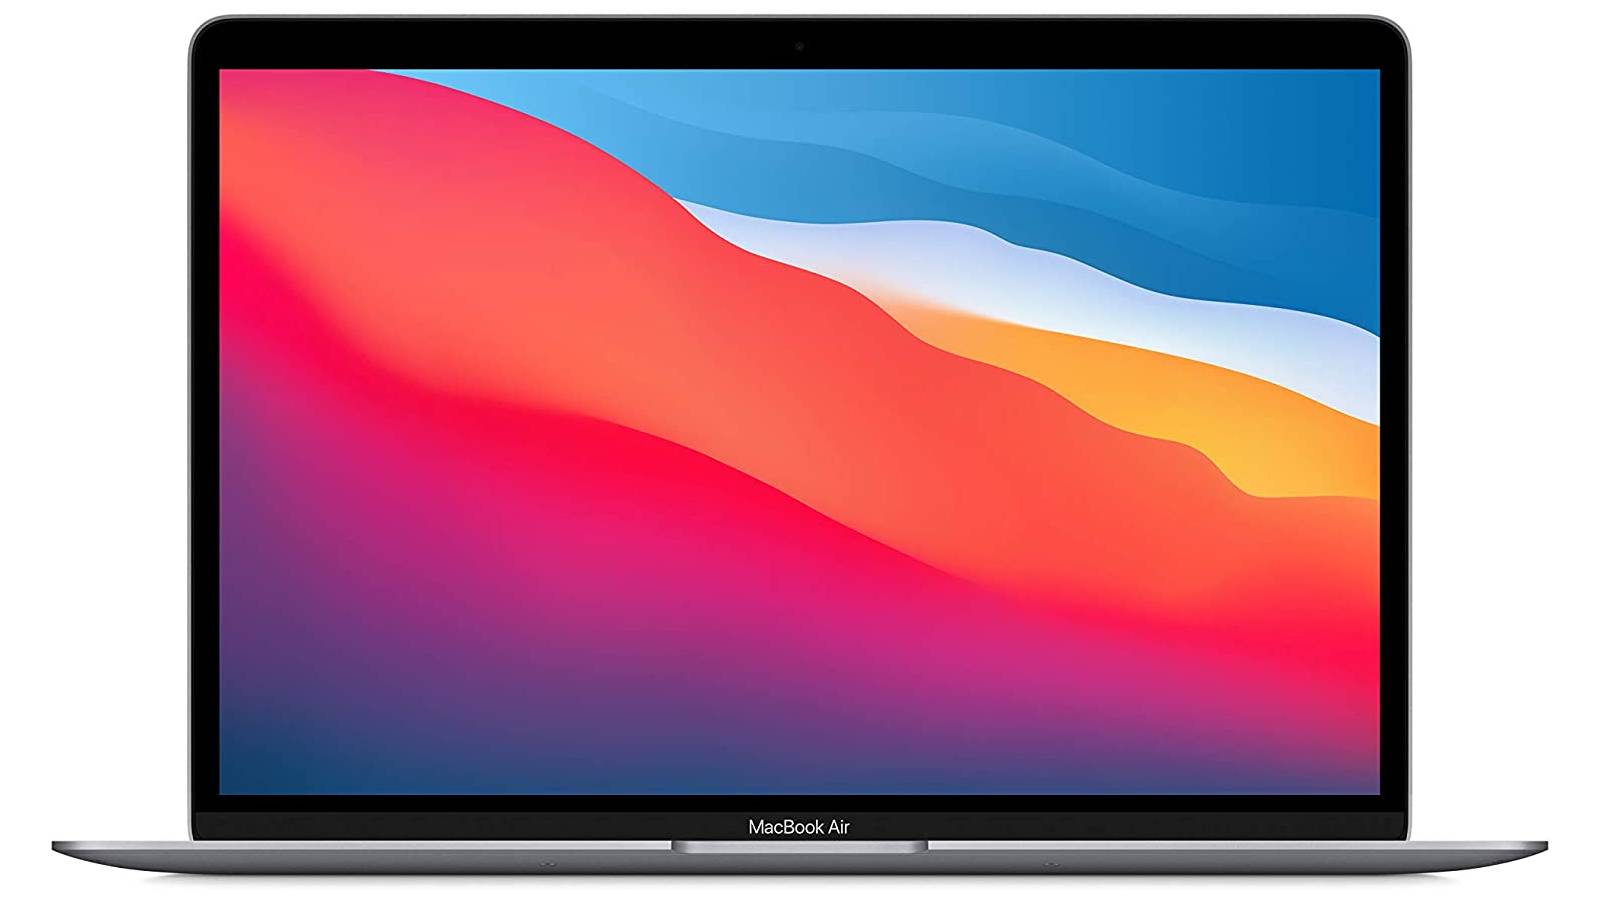 À l'instar des iMac, les prochains MacBook Air pourraient arborer plusieurs coloris